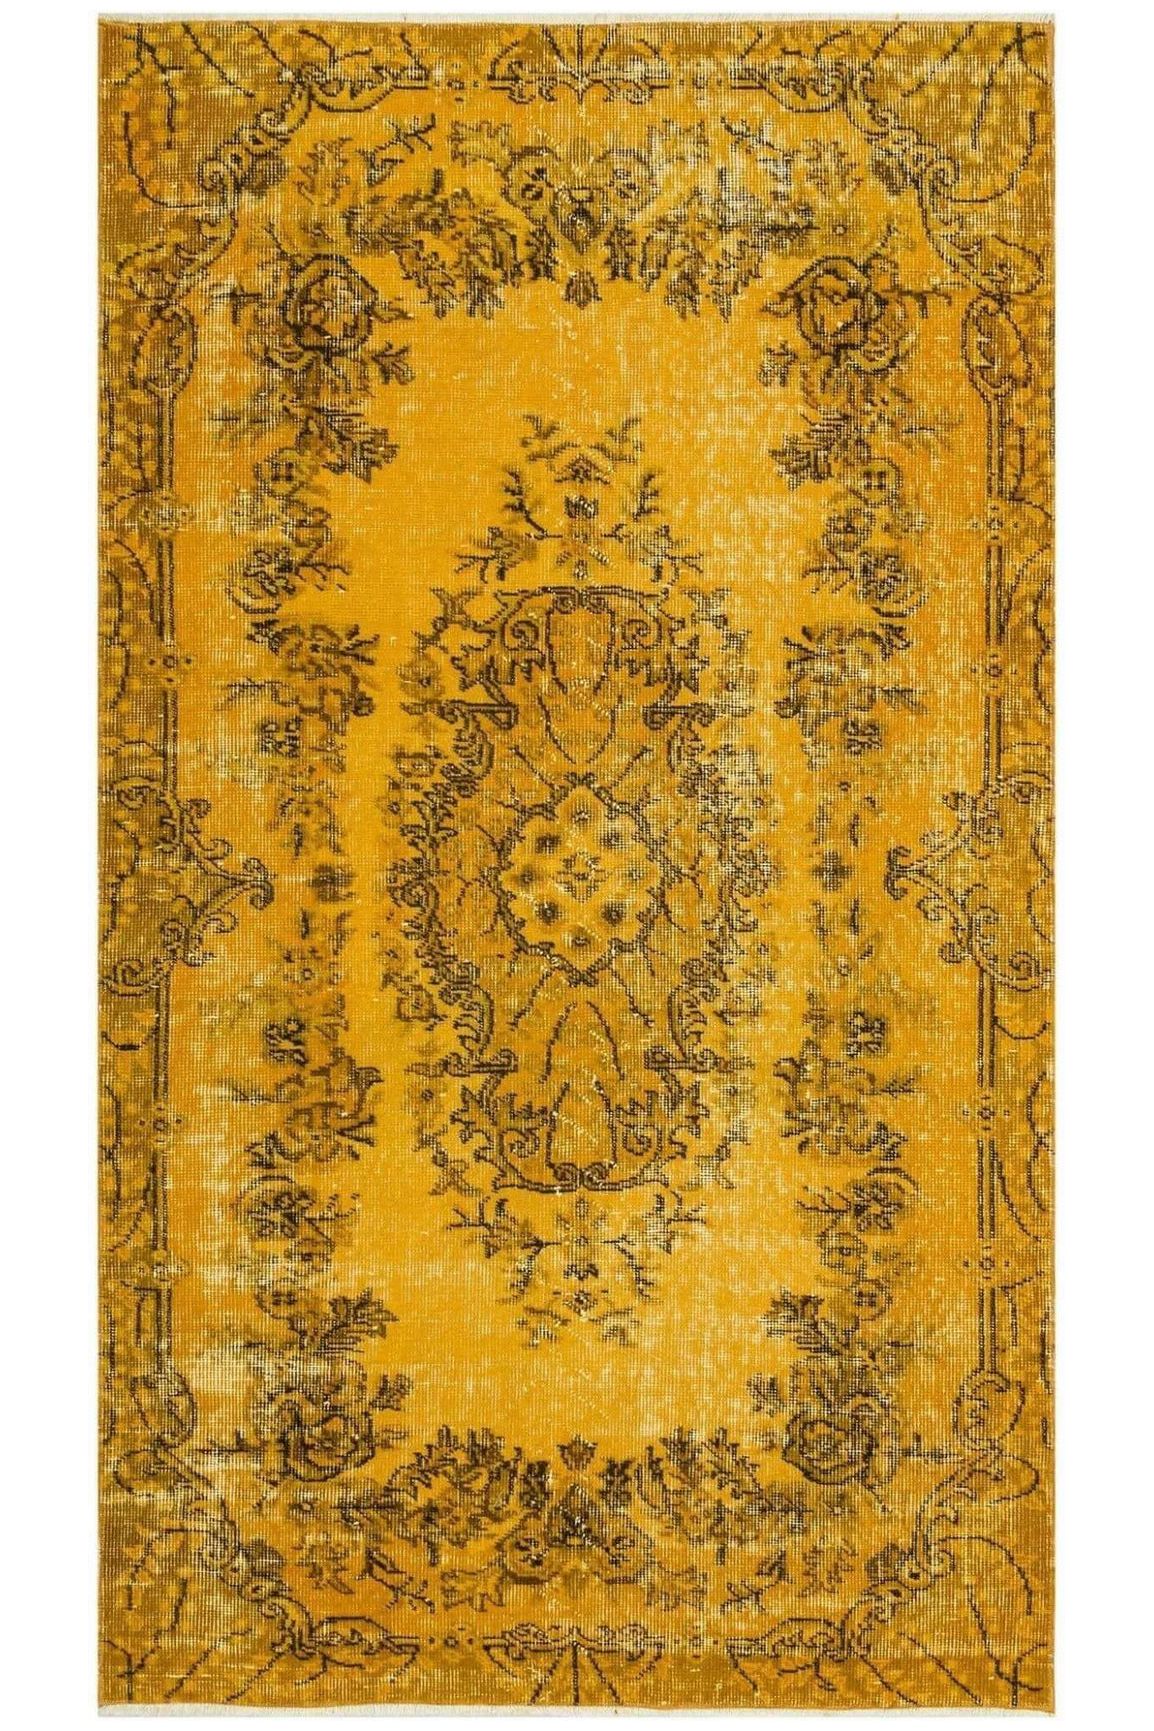 #Turkish_Carpets_Rugs# #Modern_Carpets# #Abrash_Carpets#8329 Handmade Over-Dyed Vintage Rug